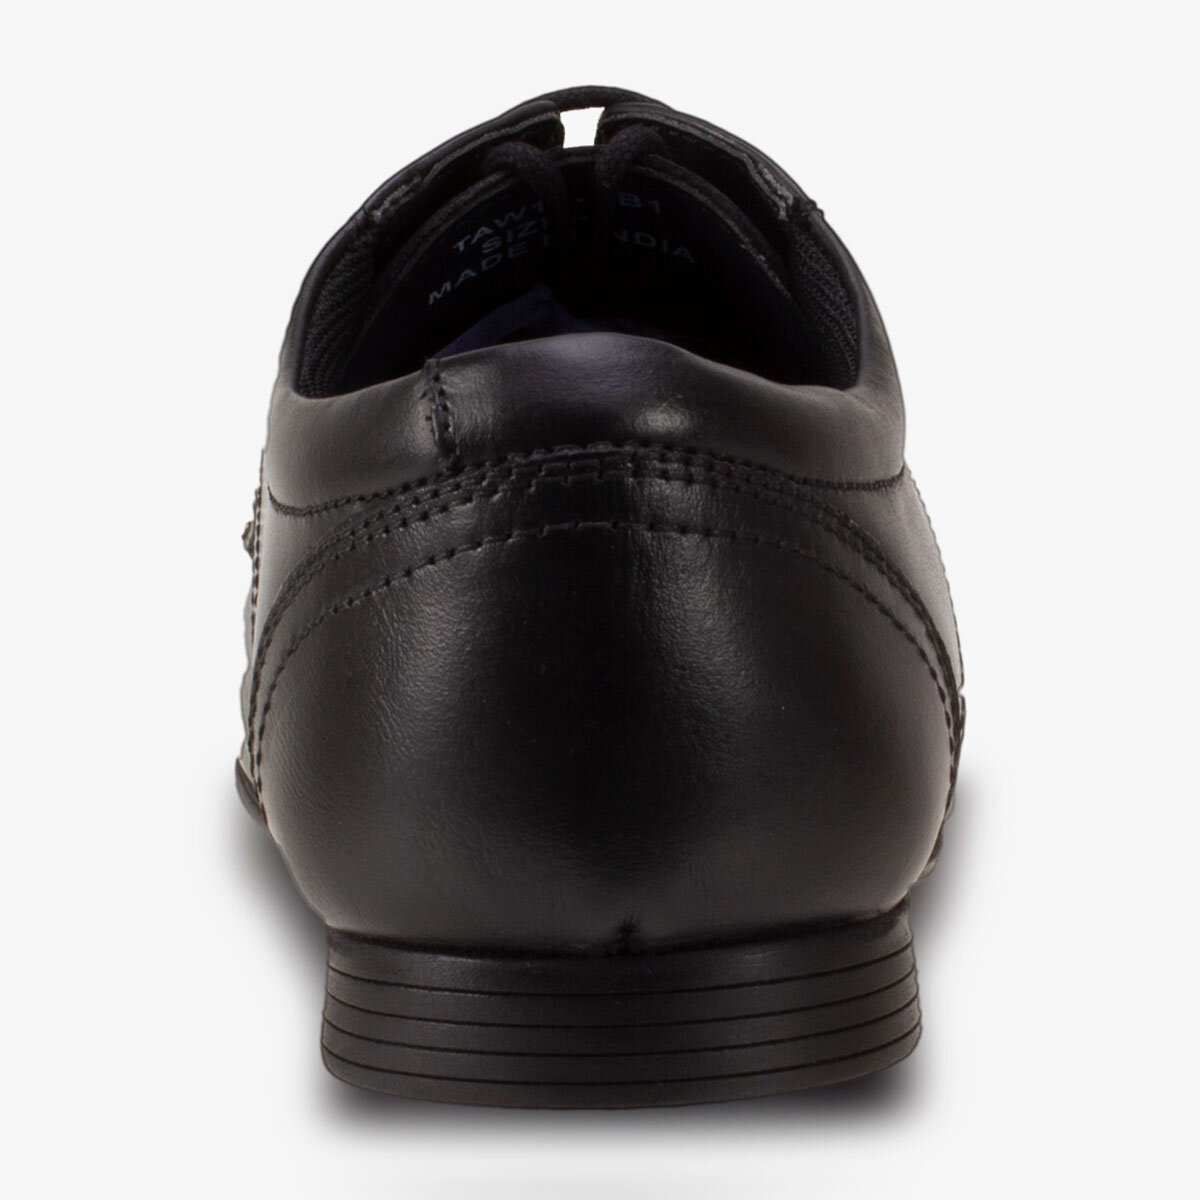 heel of shoe